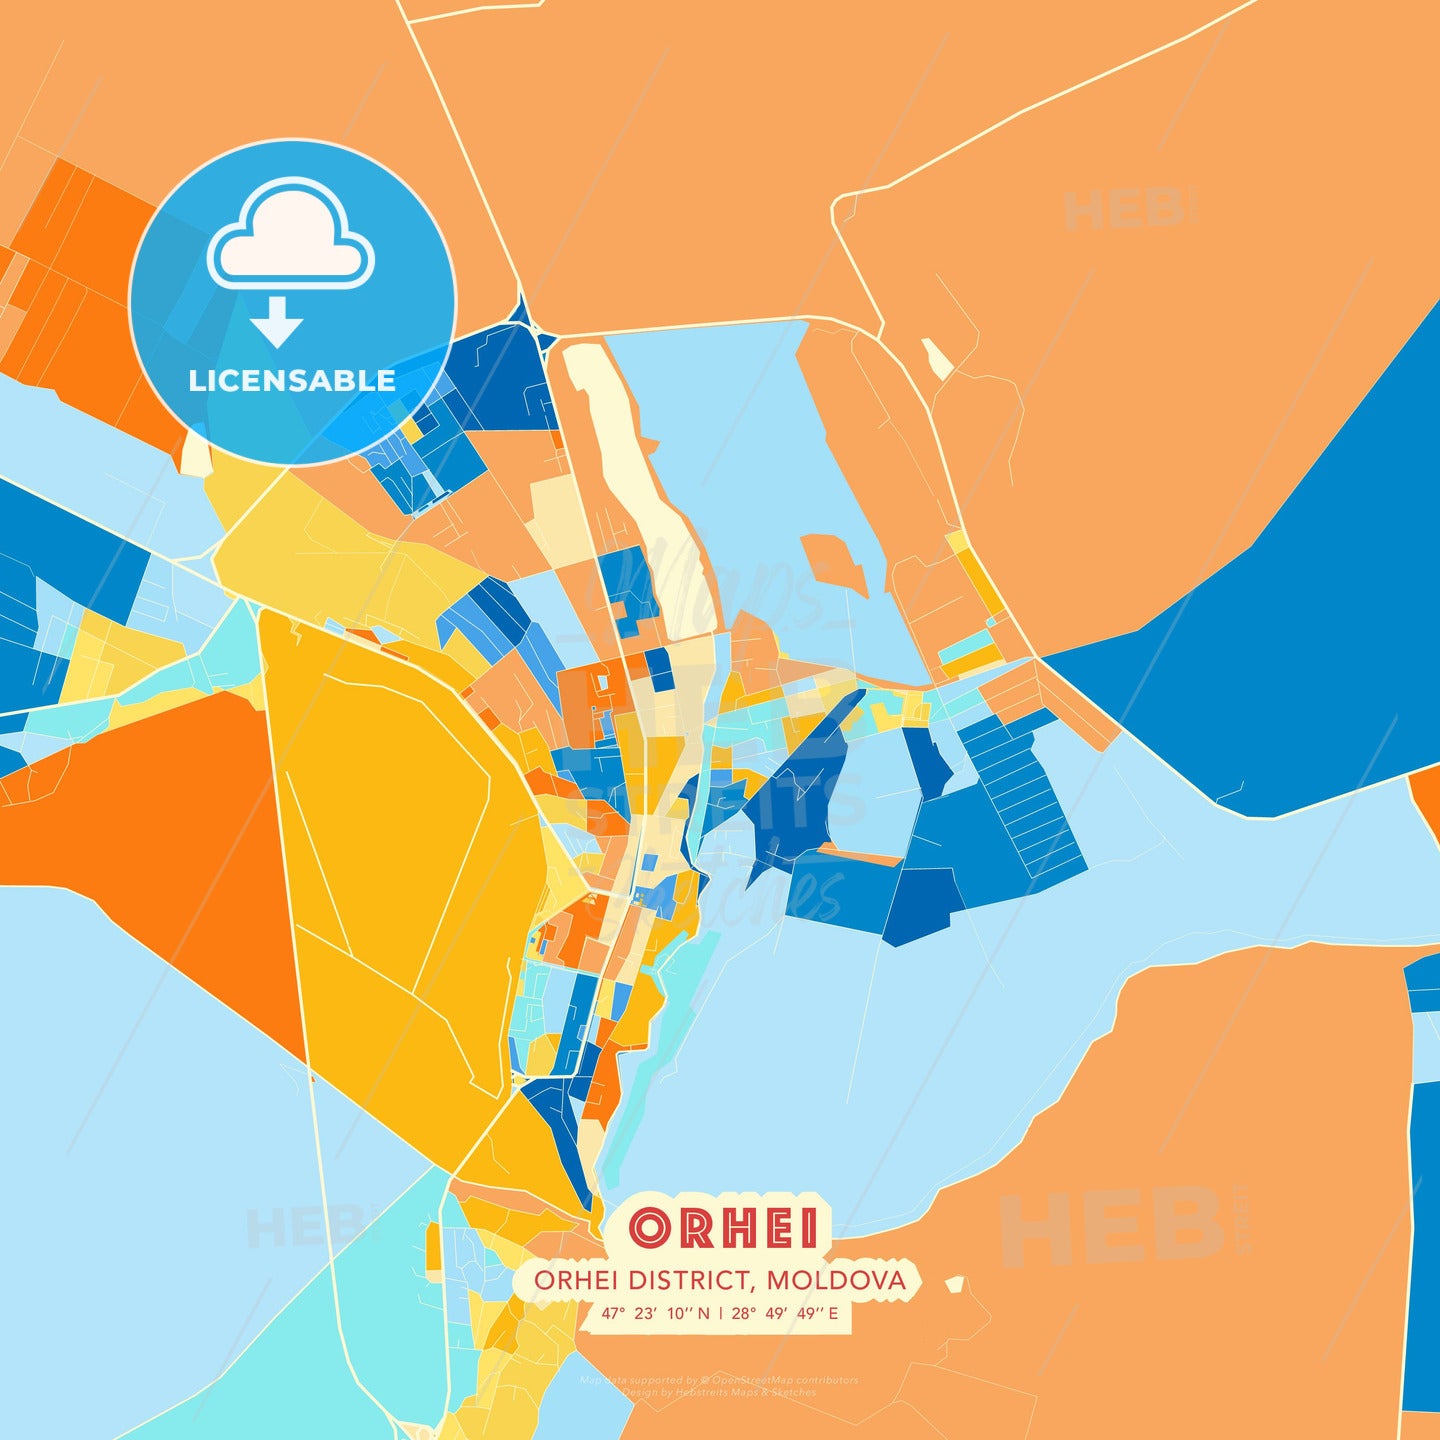 Orhei, Orhei district, Moldova, map - HEBSTREITS Sketches